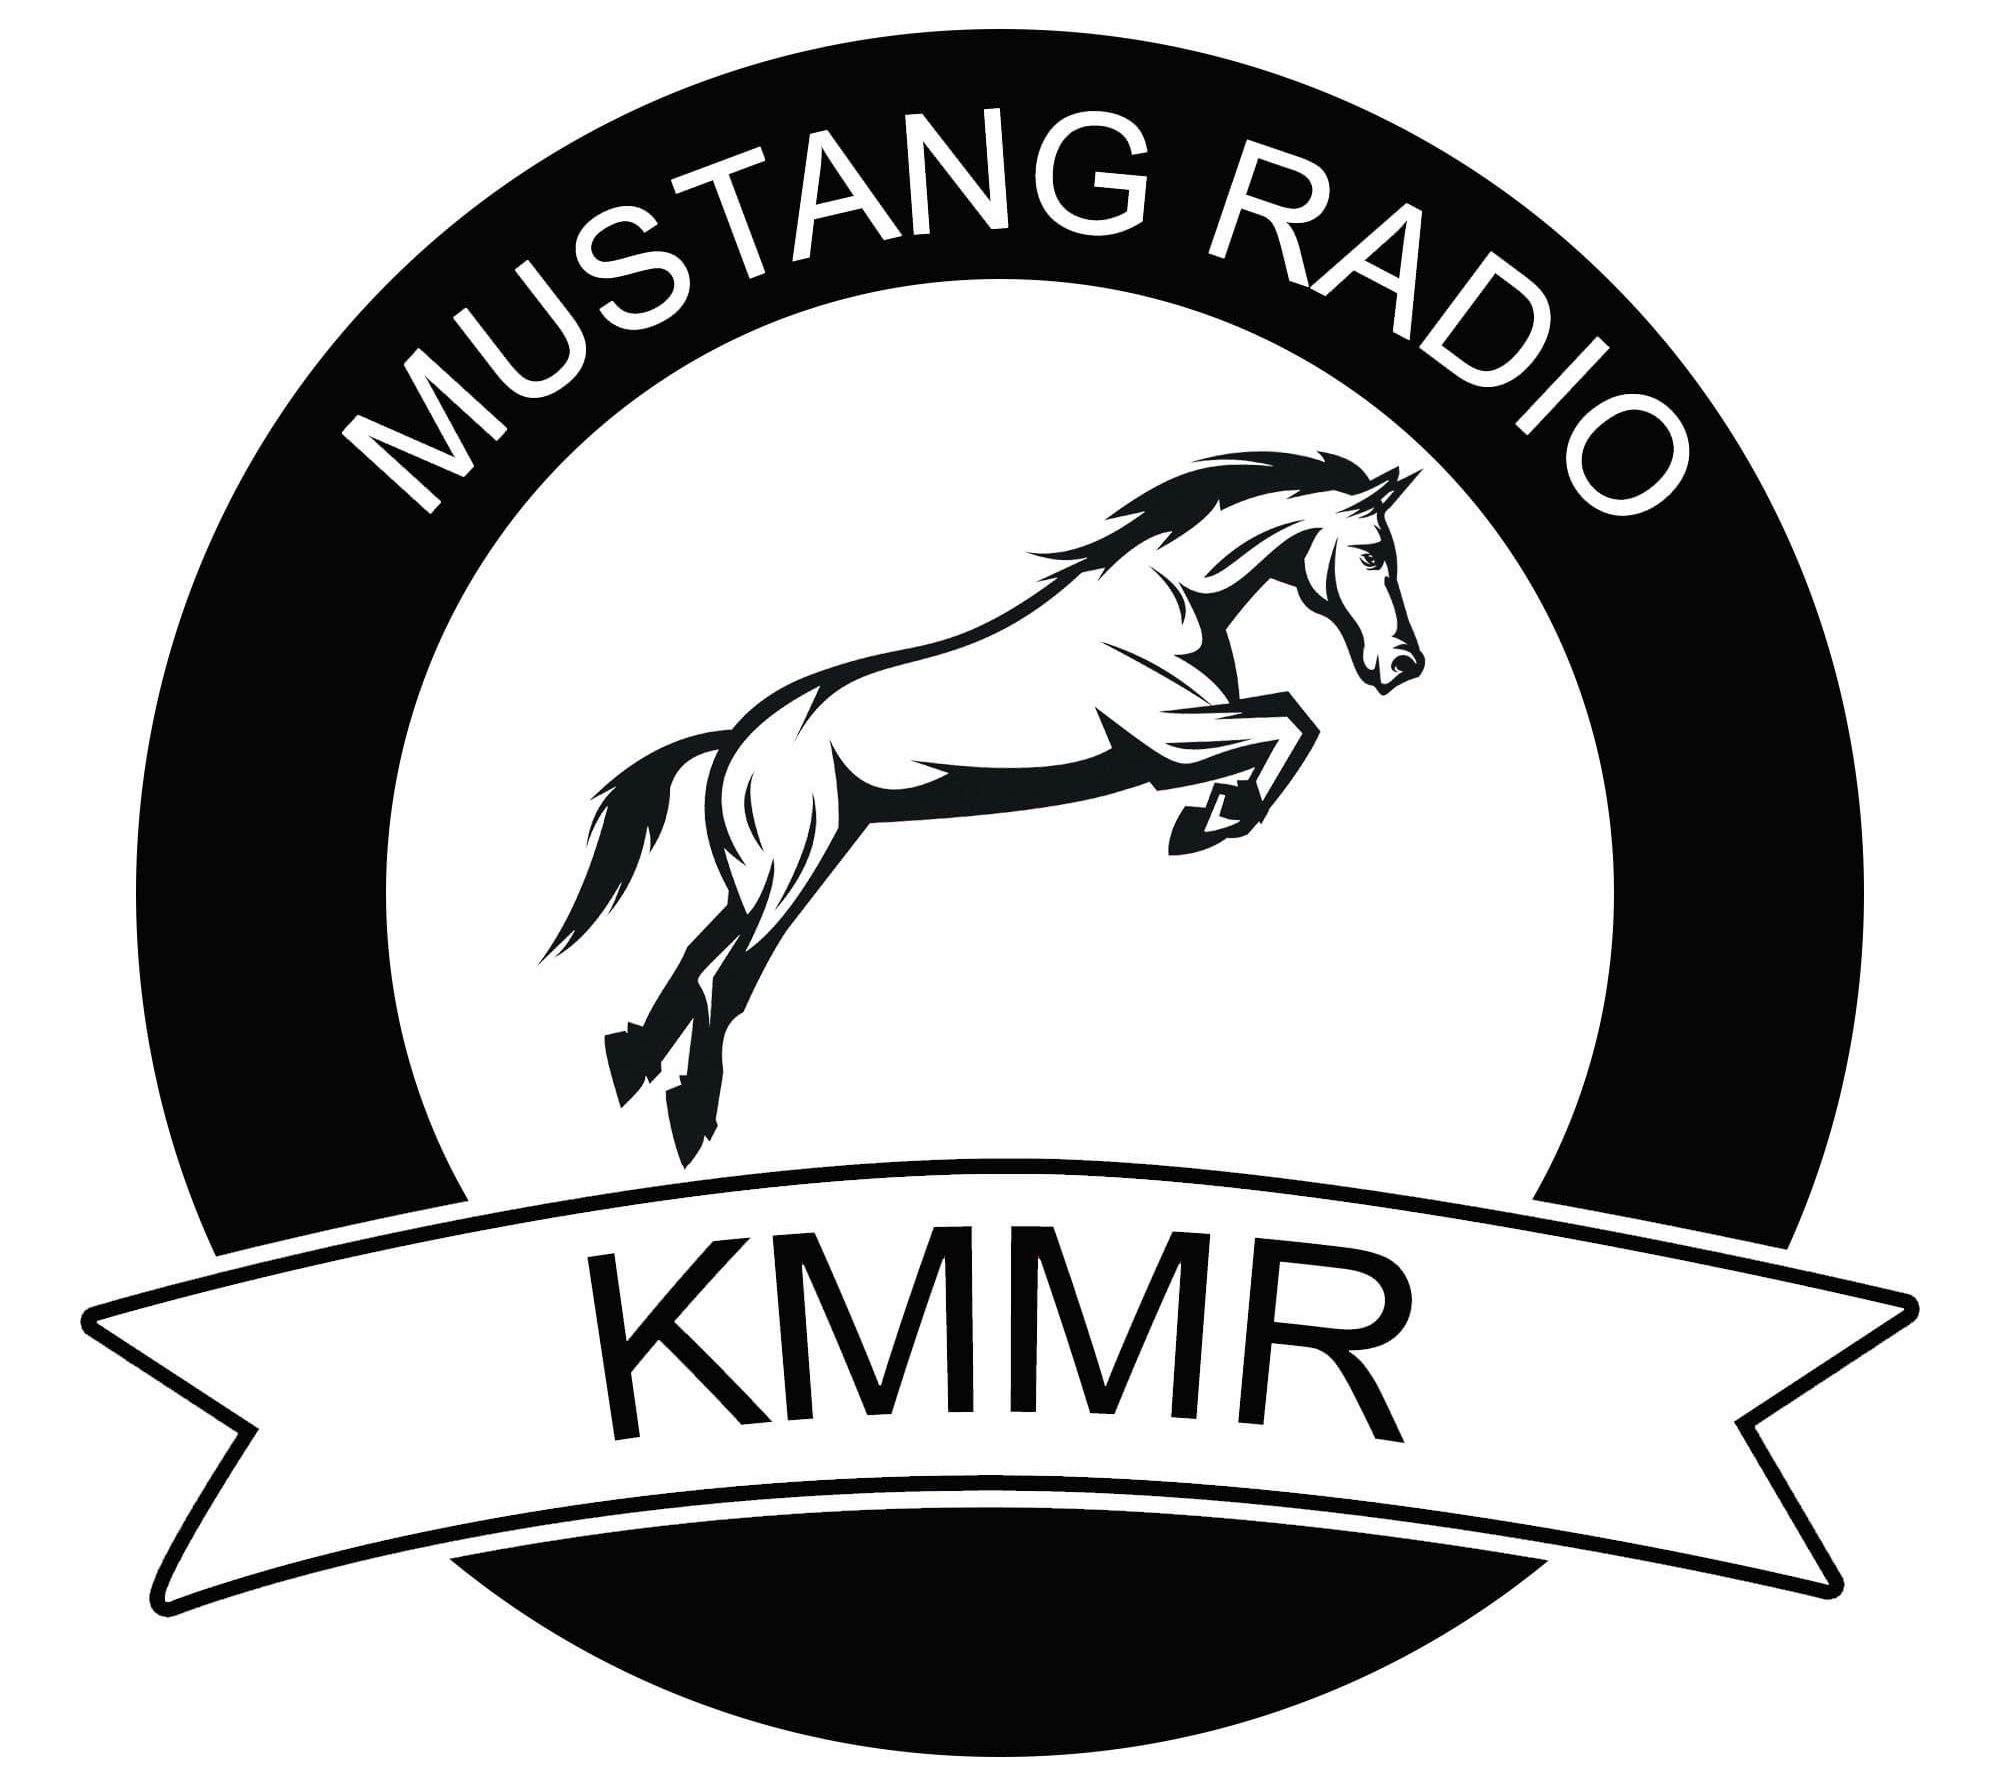 KMMR FM 100.1 Malta